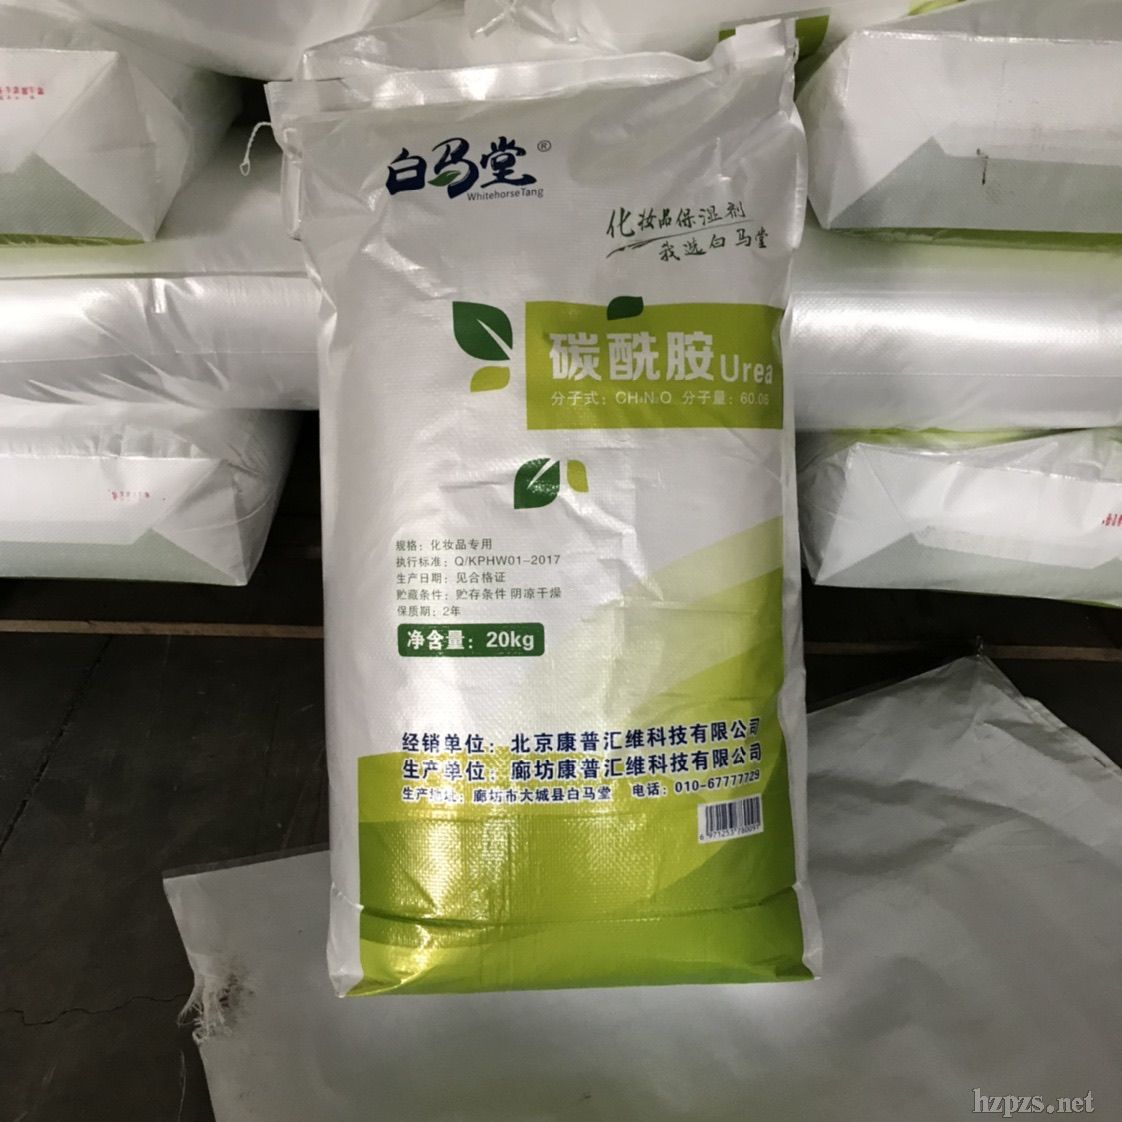 北京康普維usp尿素含量99廠家直銷